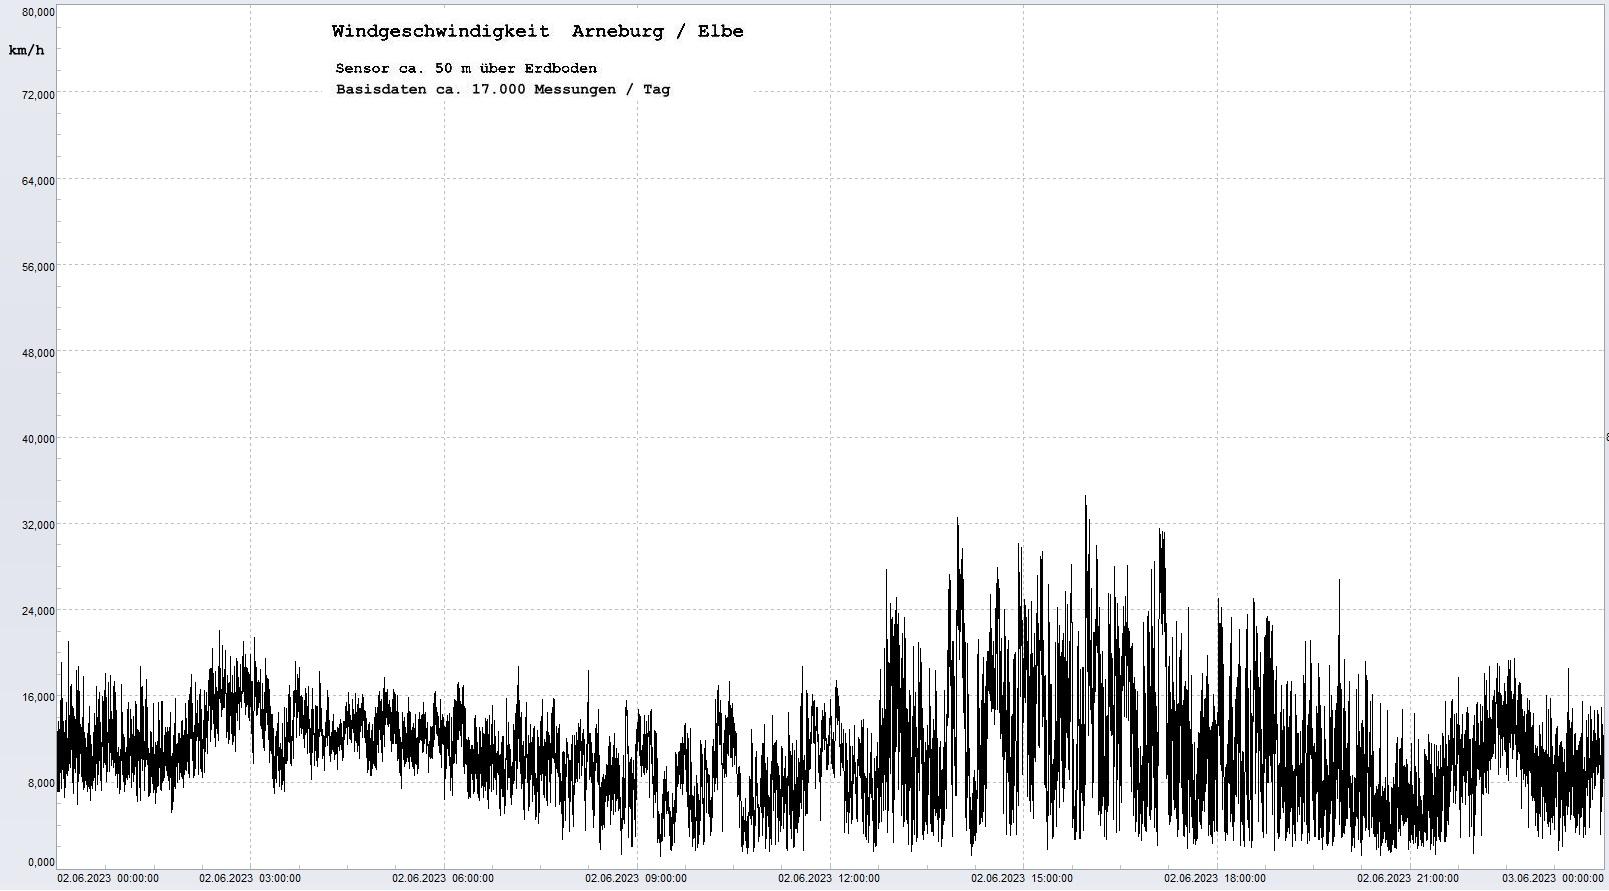 Arneburg Tages-Diagramm Winddaten, 02.06.2023
  Diagramm, Sensor auf Gebude, ca. 50 m ber Erdboden, Basis: 5s-Aufzeichnung